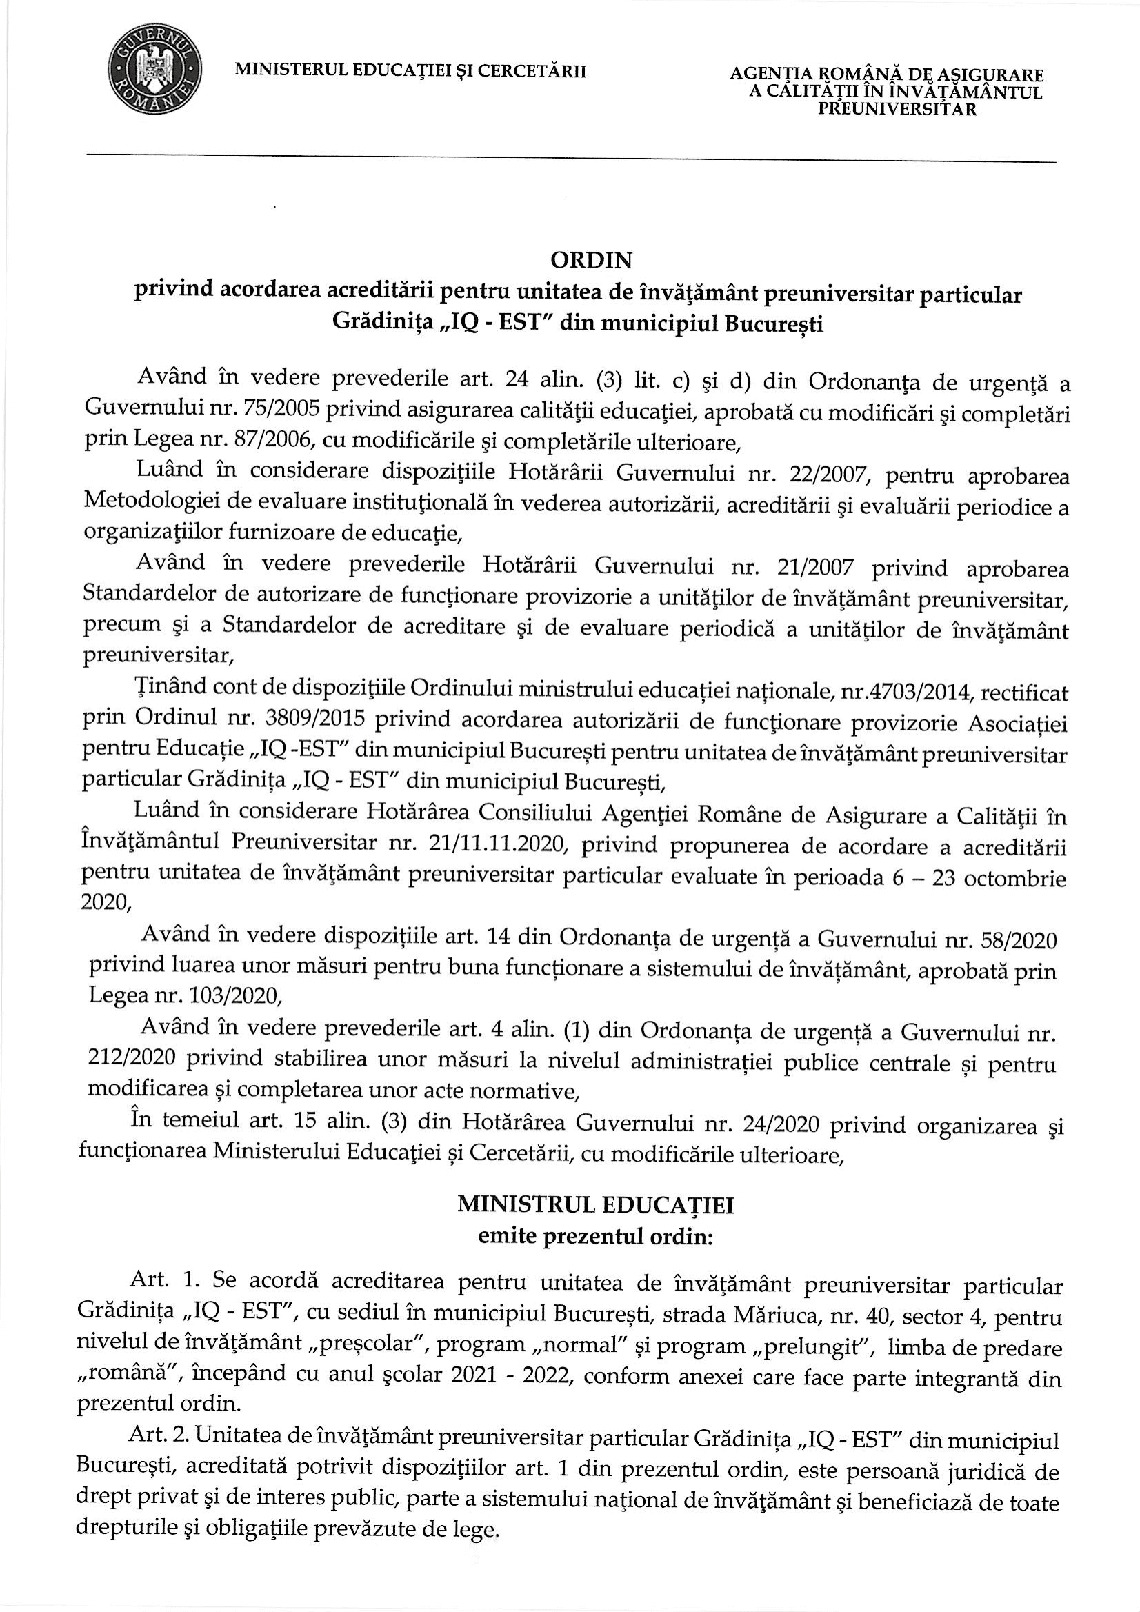 OMEC nr. 3571 din 29.03.2021 acreditare Gradinita IQ EST din Bucuresti 1 1